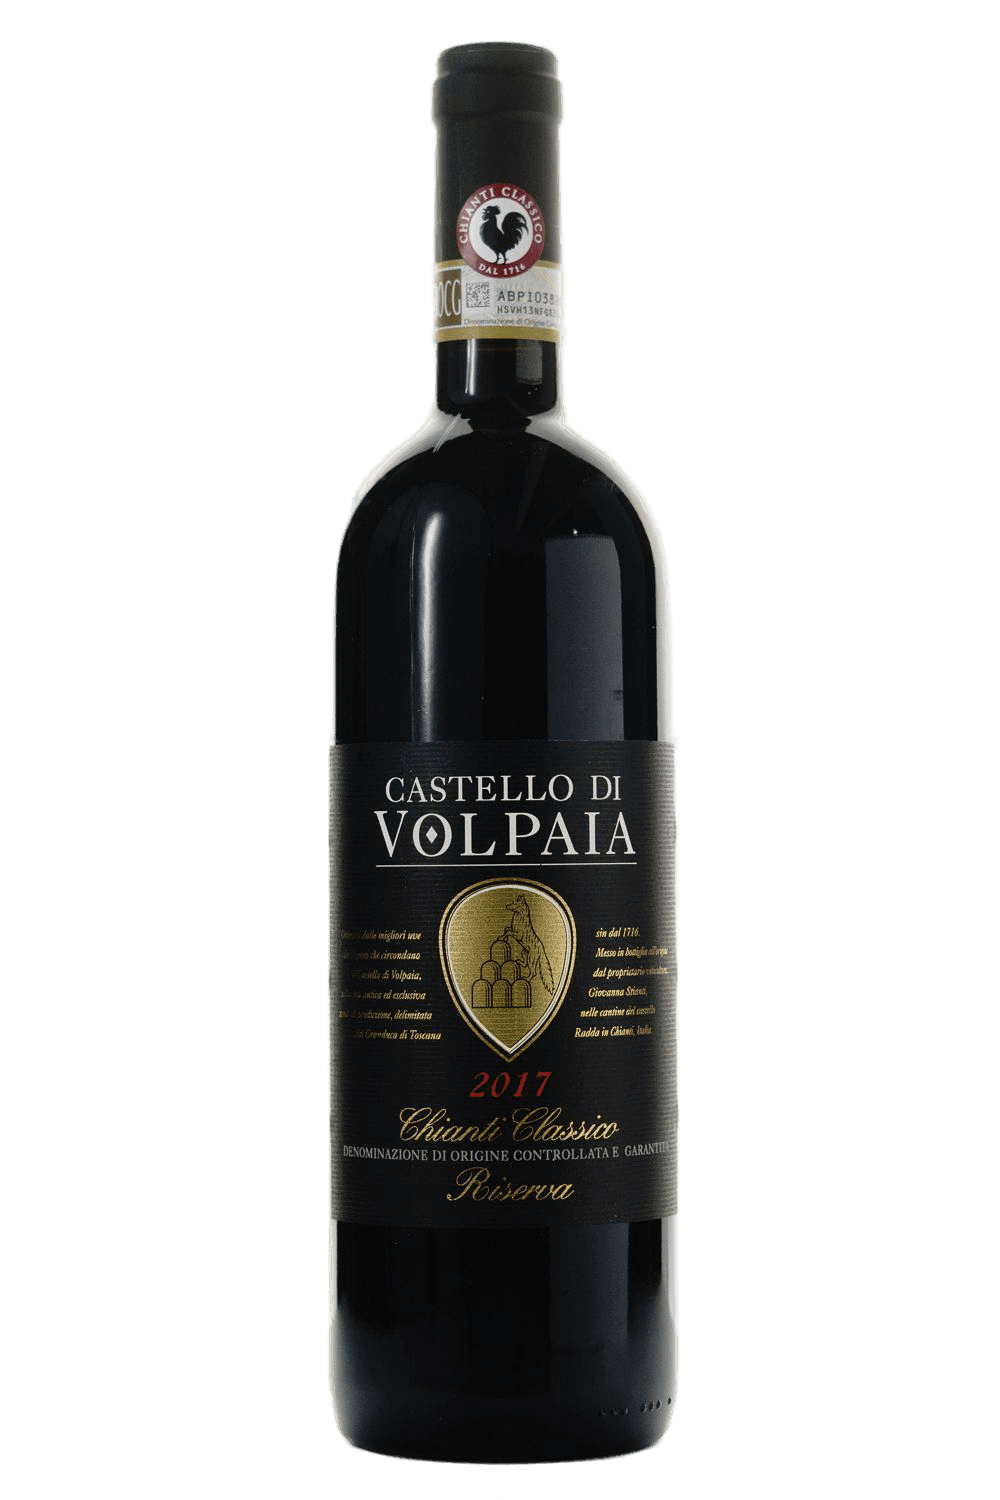 Castello di Volpaia Chianti Classico Riserva DOCG 2017 - The Blend Wines